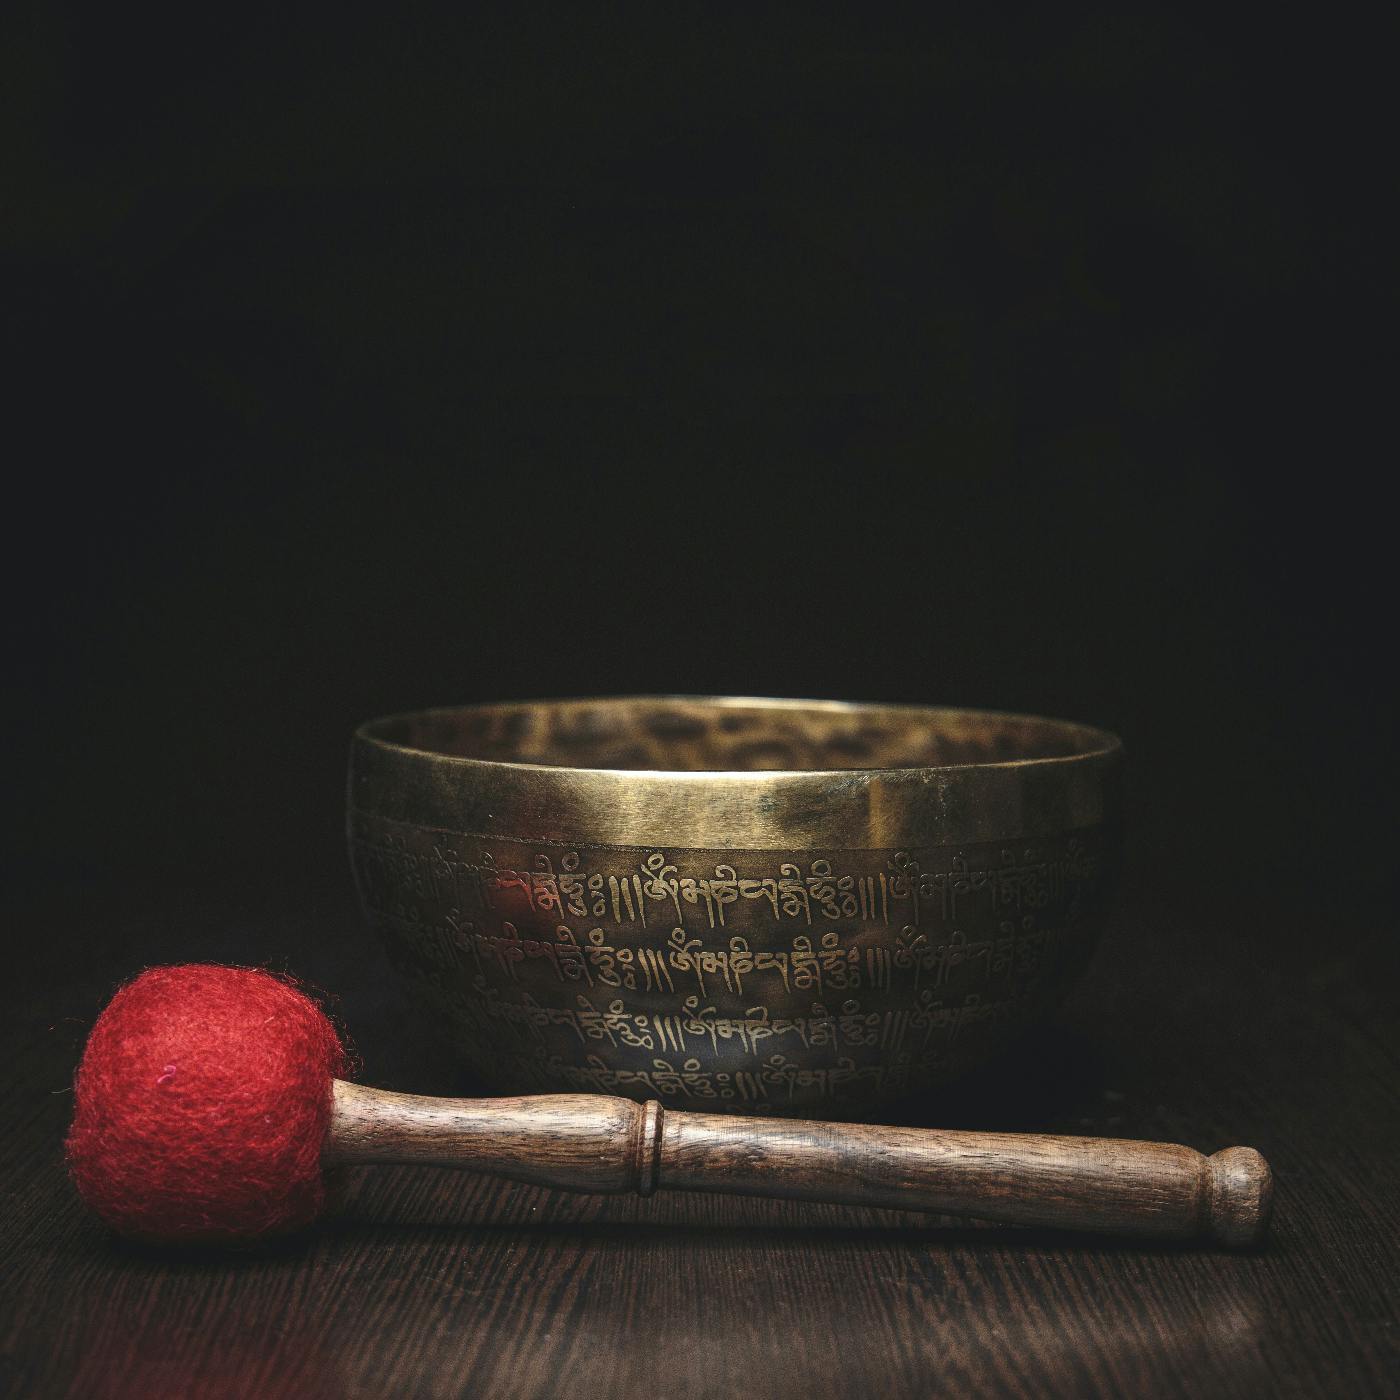 A Tibetan prayer bowl and hammer